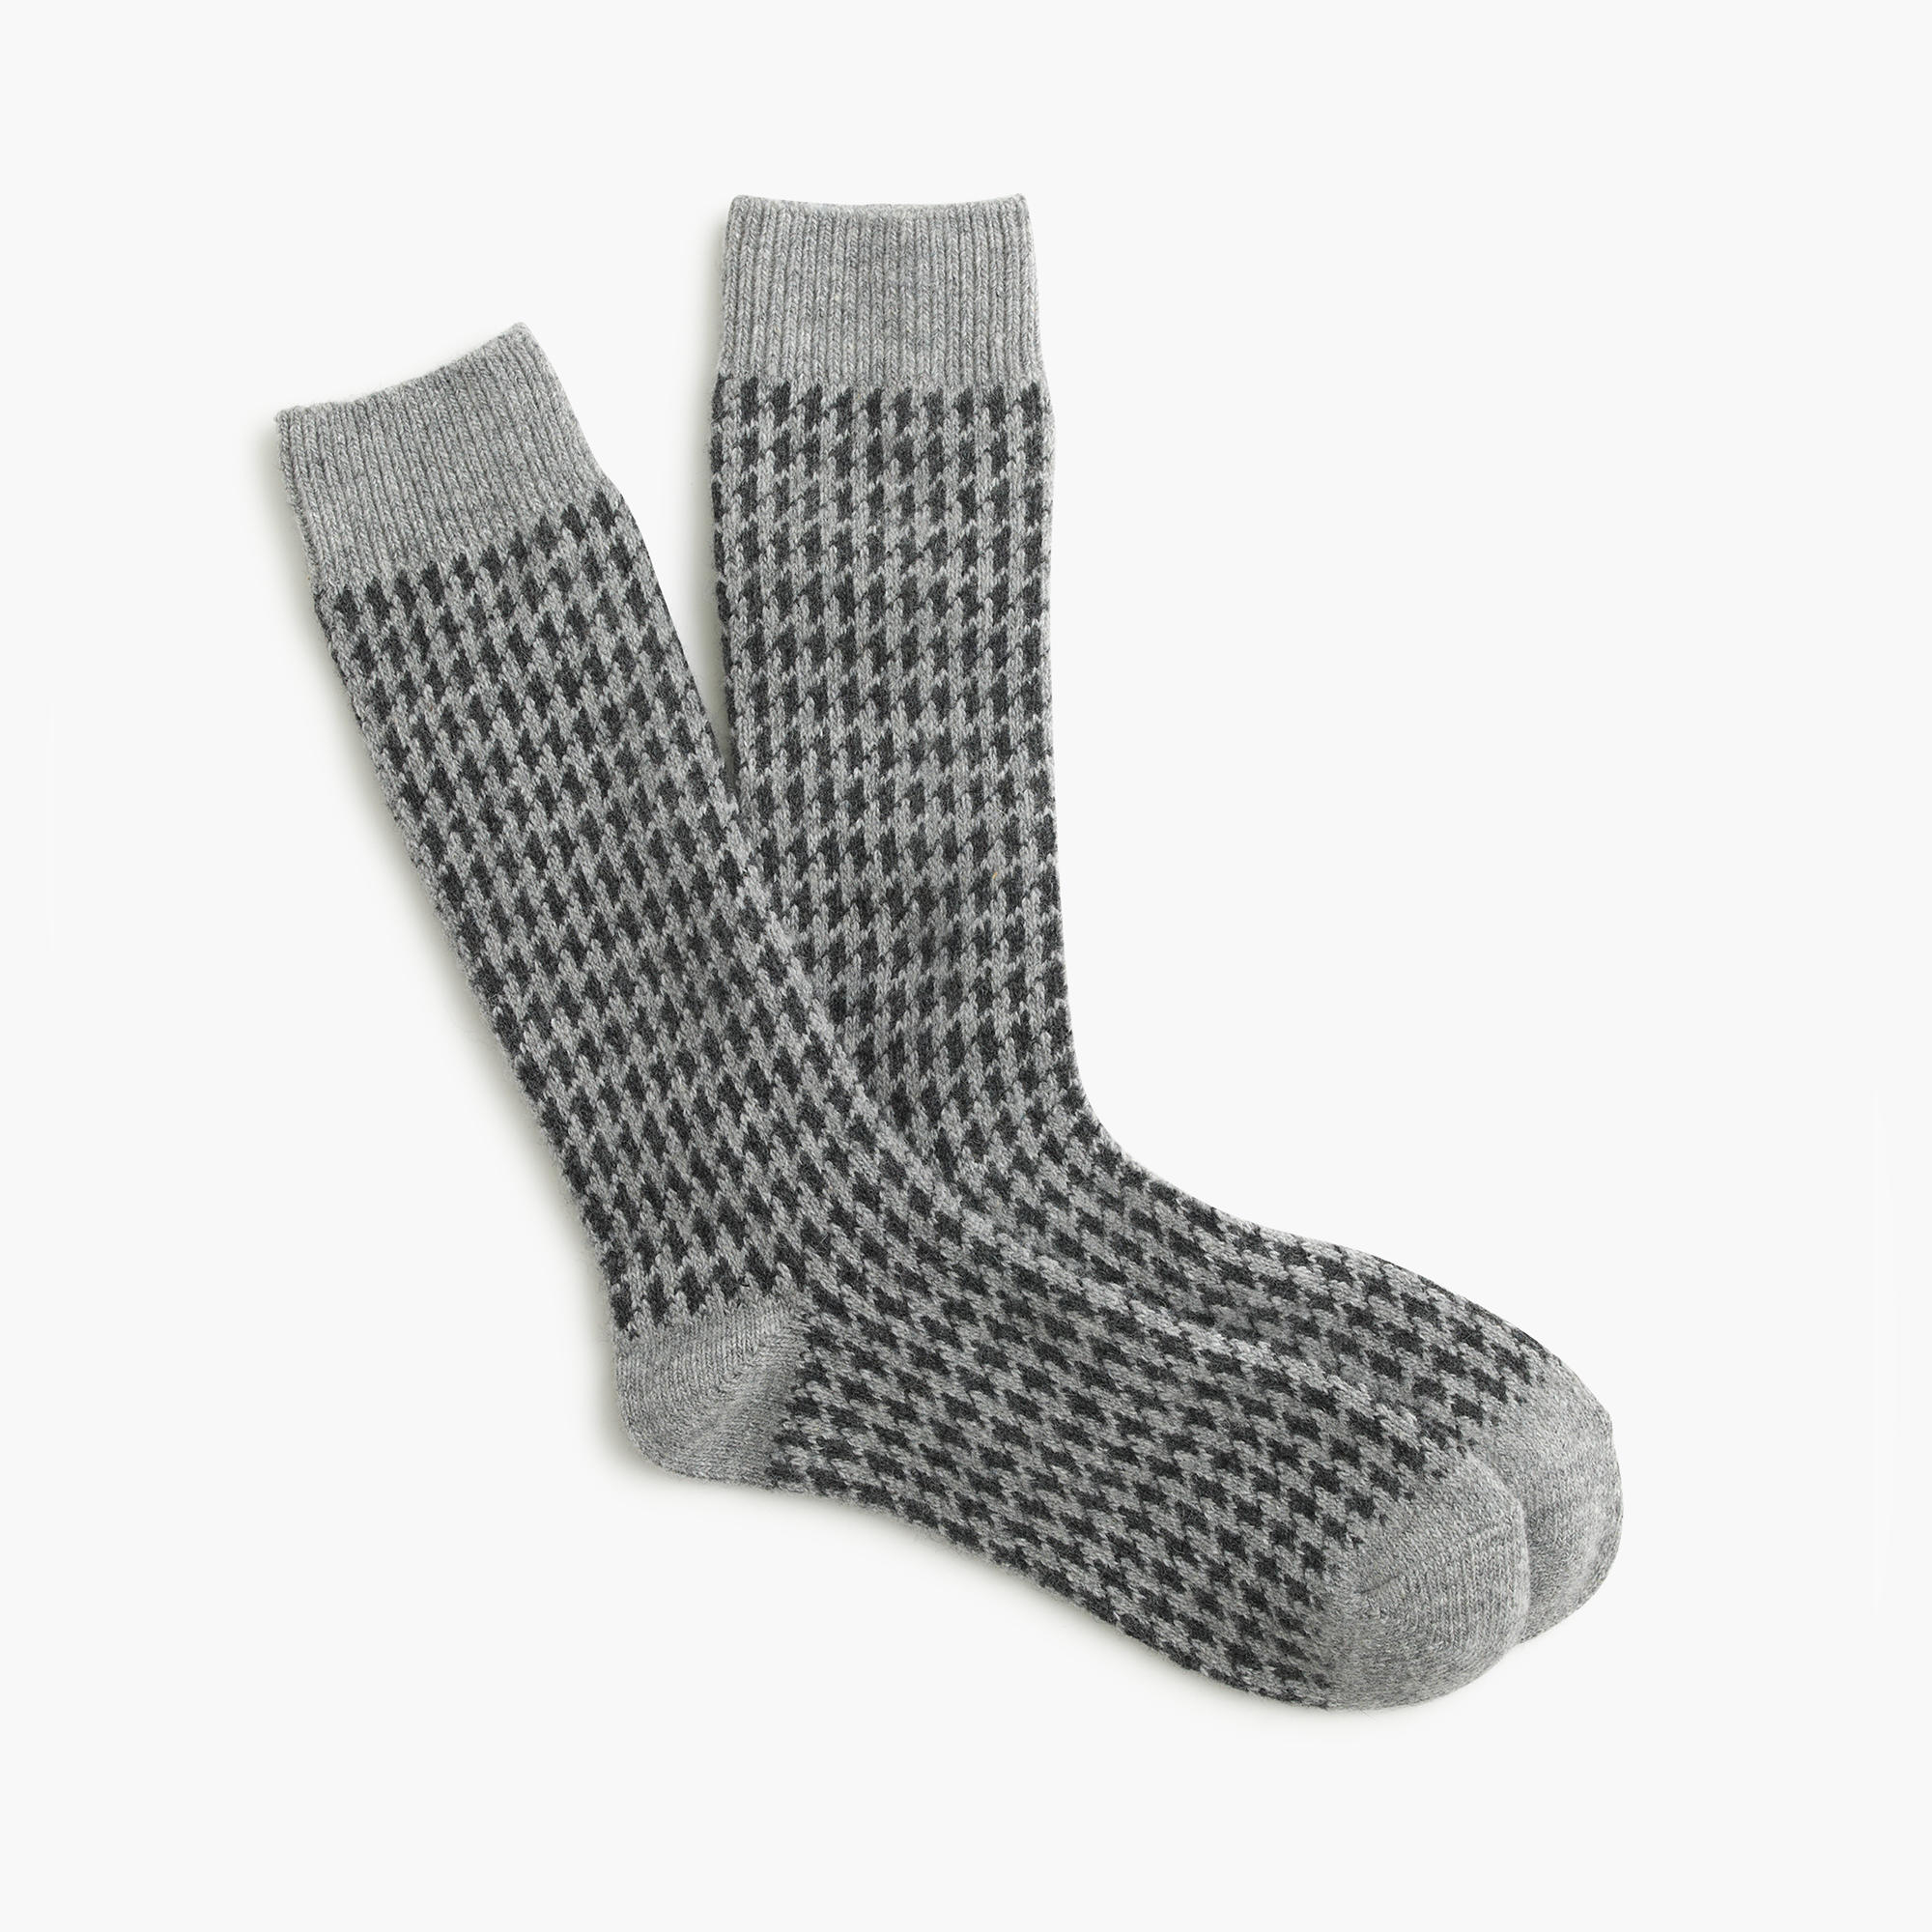 Lyst - J.Crew Houndstooth Socks in Gray for Men